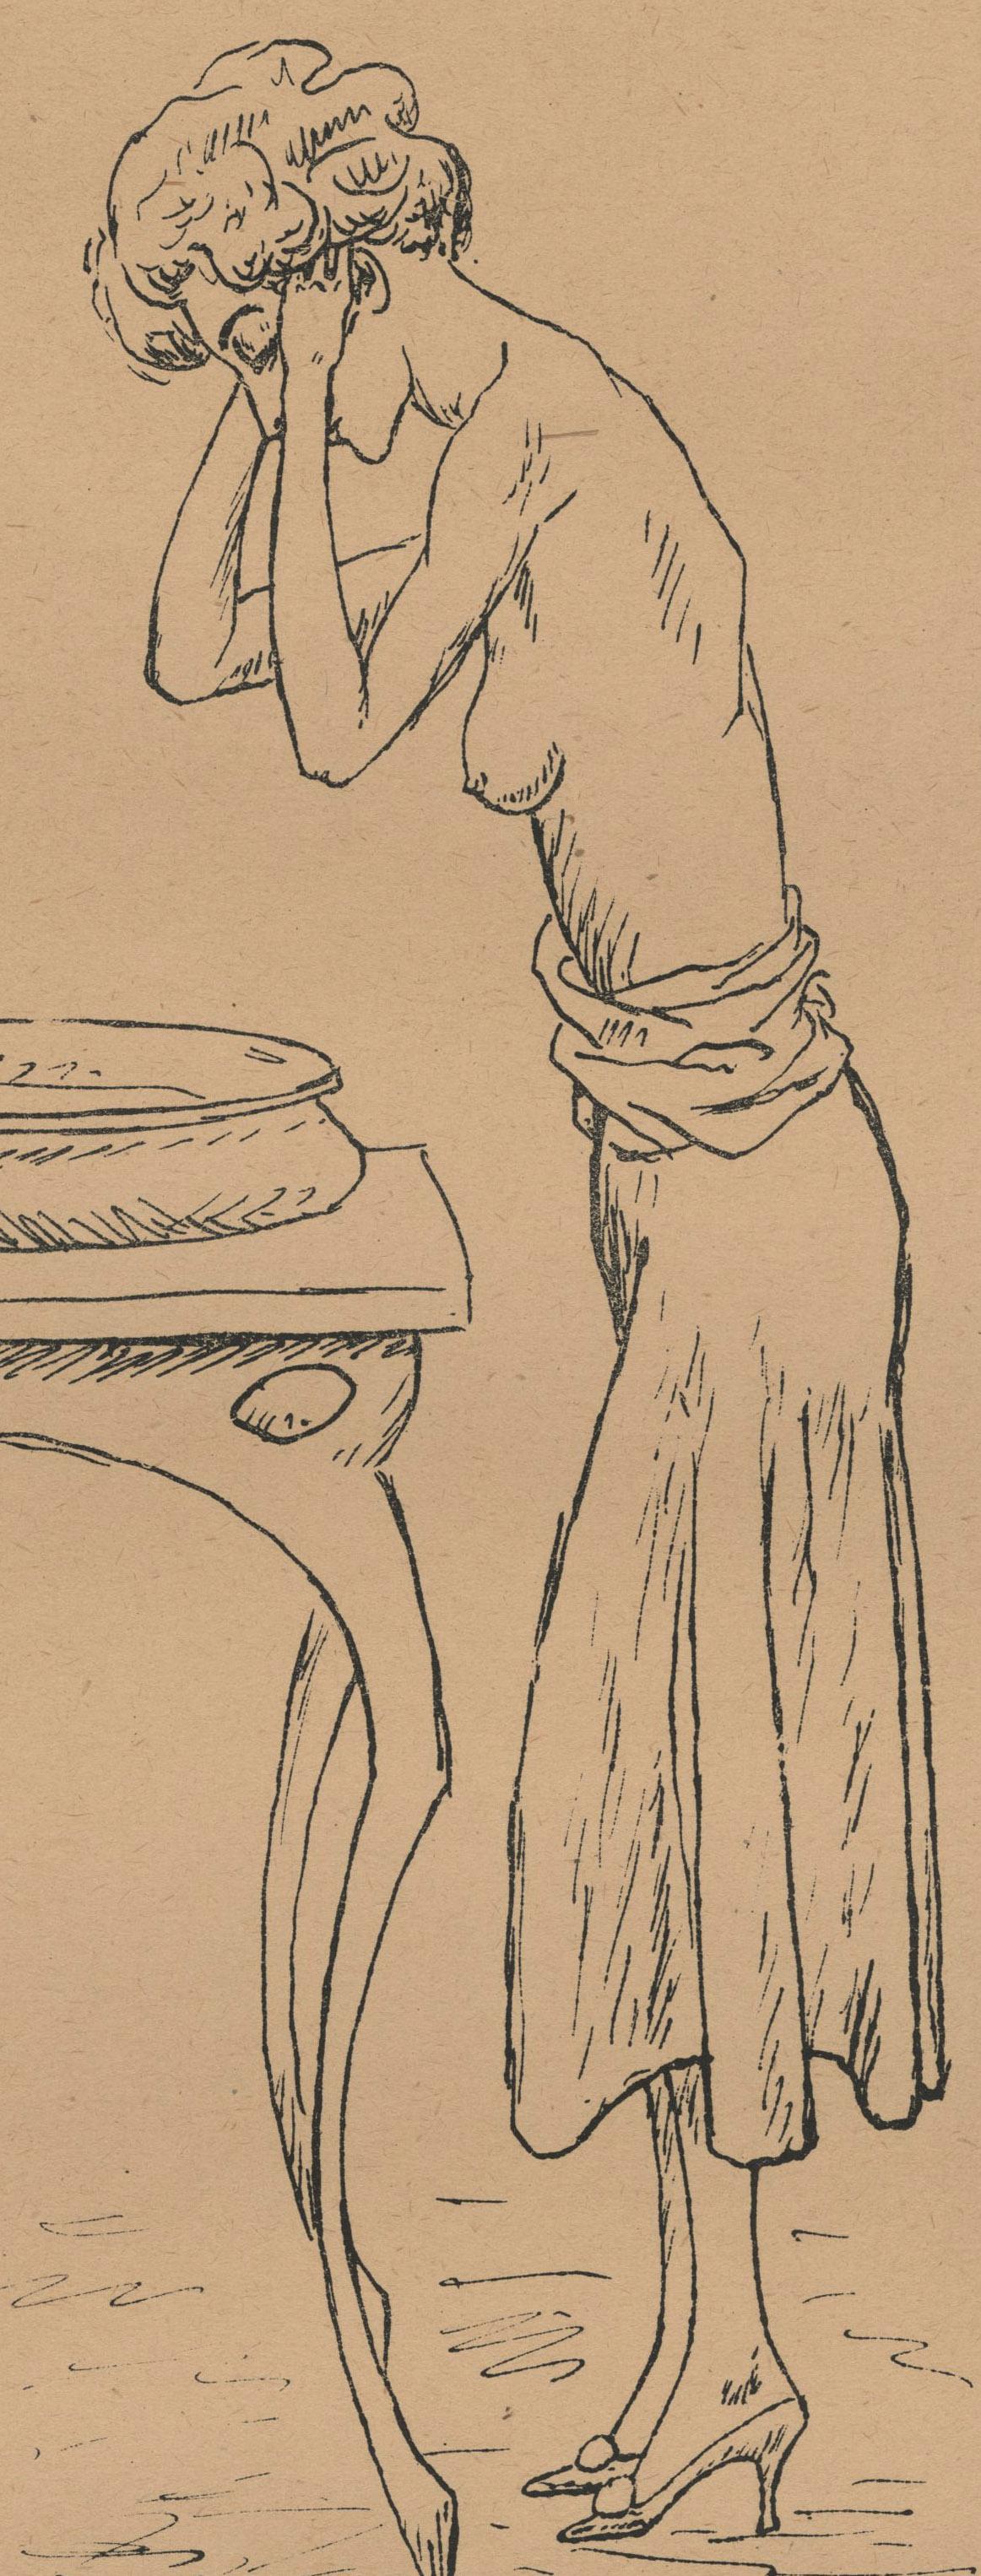 Ohne Titel ( Junge Frau gewaschen)
Lithographie, um 1910
Signiert mit Bleistift unten rechts; signiert in der Platte unten rechts (siehe Foto)
Bildgröße: 11 x 5-1/8